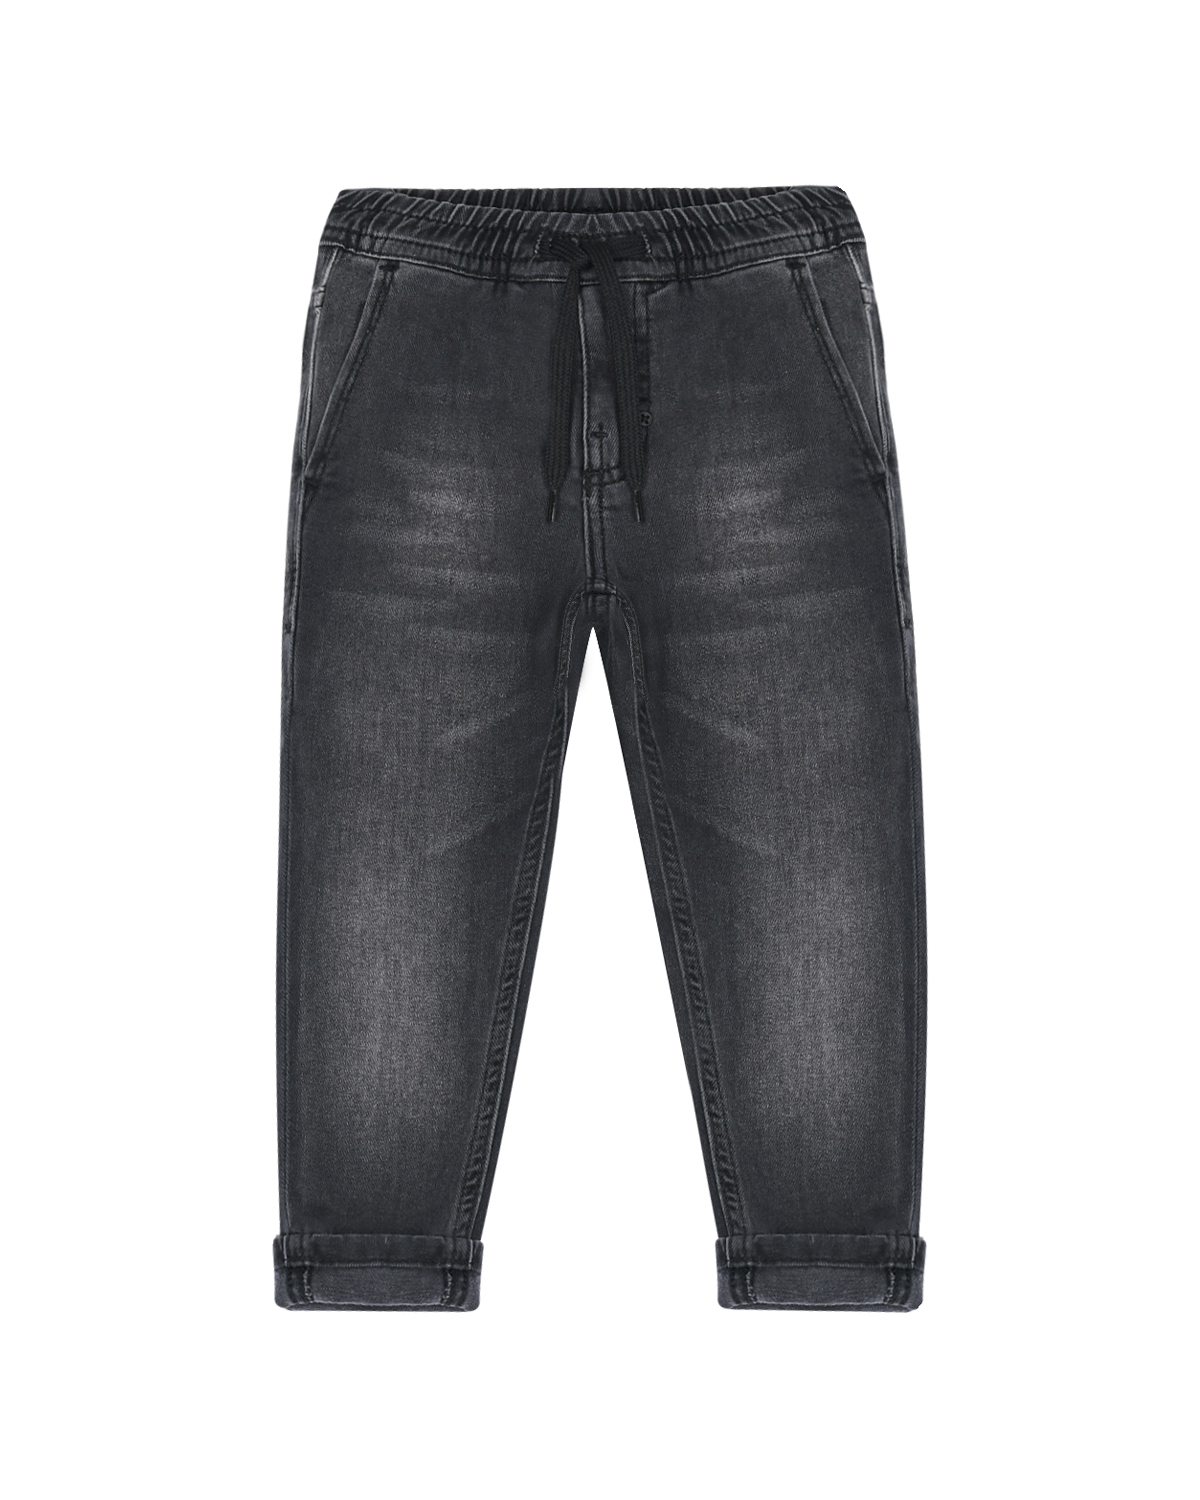 Черные джинсы с поясом на резинке Antony Morato детские, размер 116, цвет черный